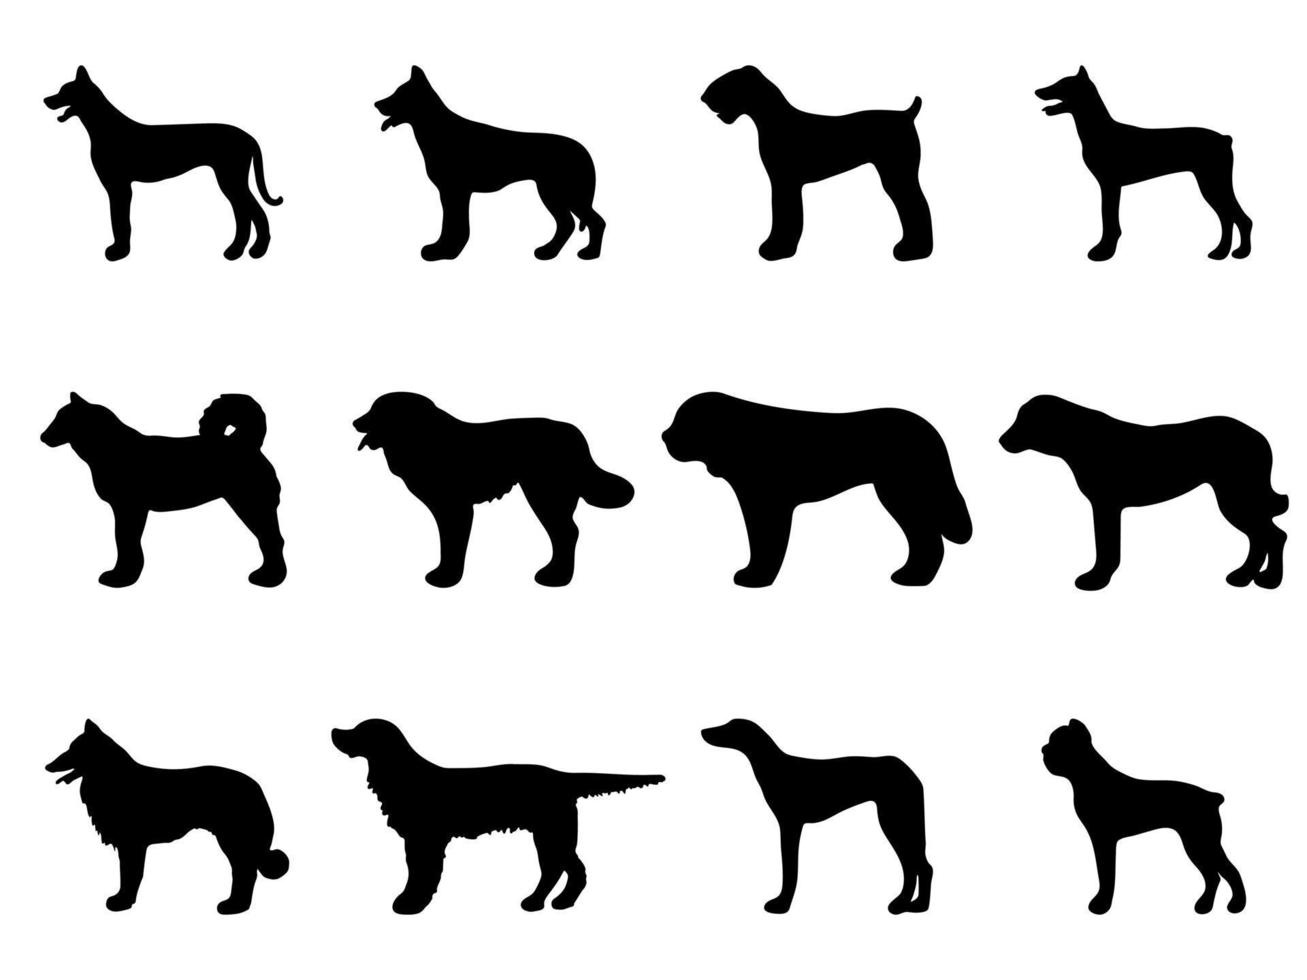 jeu de silhouette de chien. silhouettes noires d'un chien sur fond blanc. illustration vectorielle vecteur